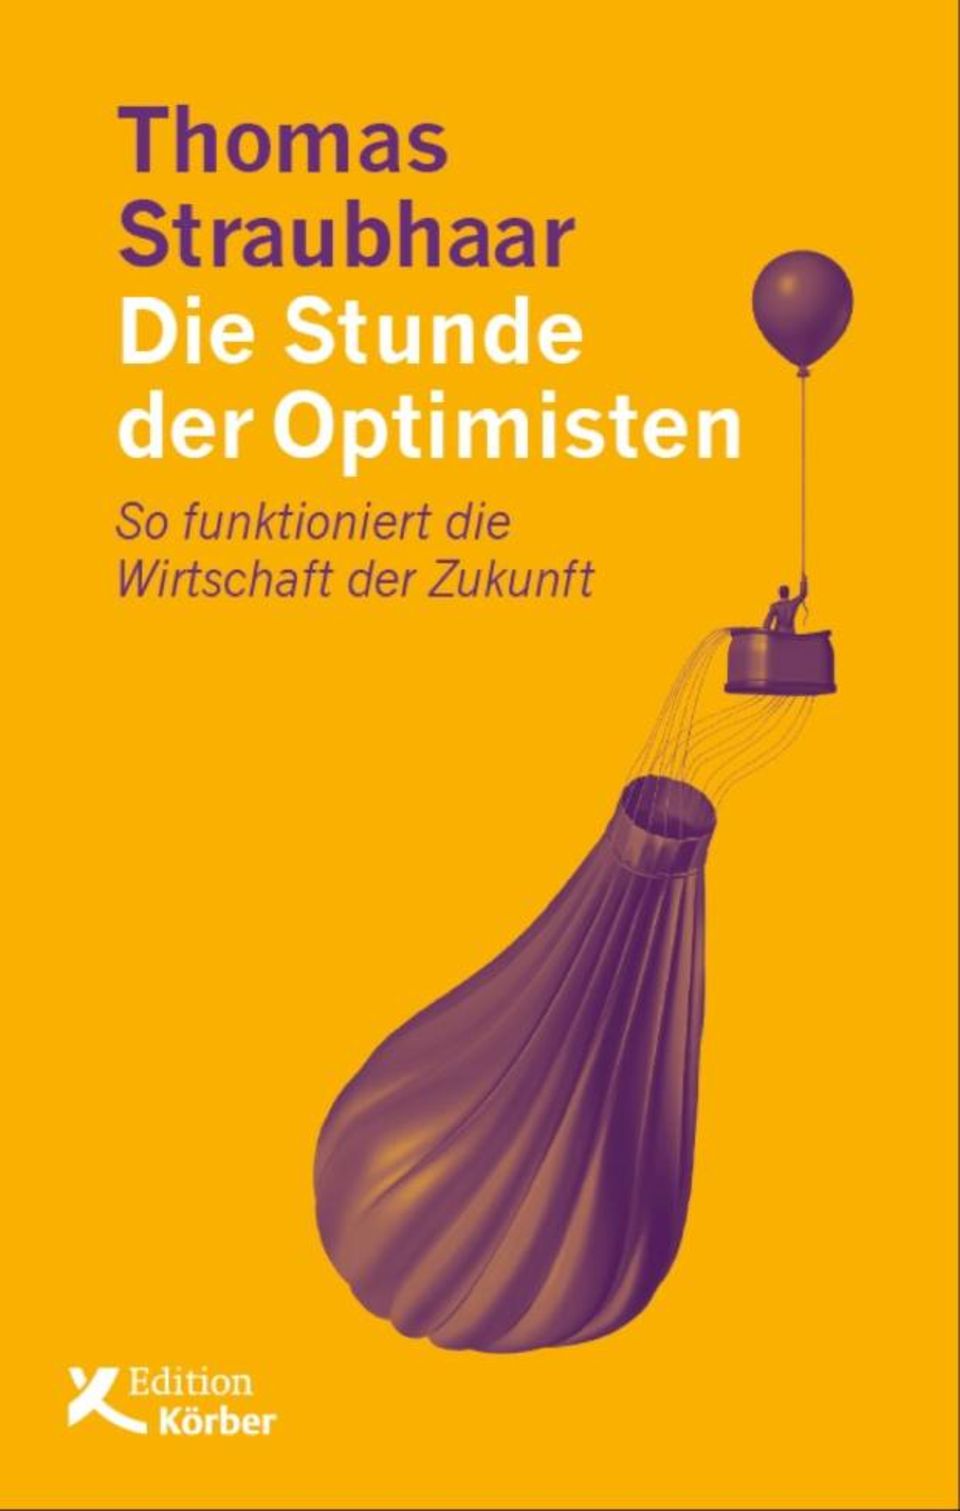 "Die Stunde der Optimisten" ist bei Edition Körber erschienen